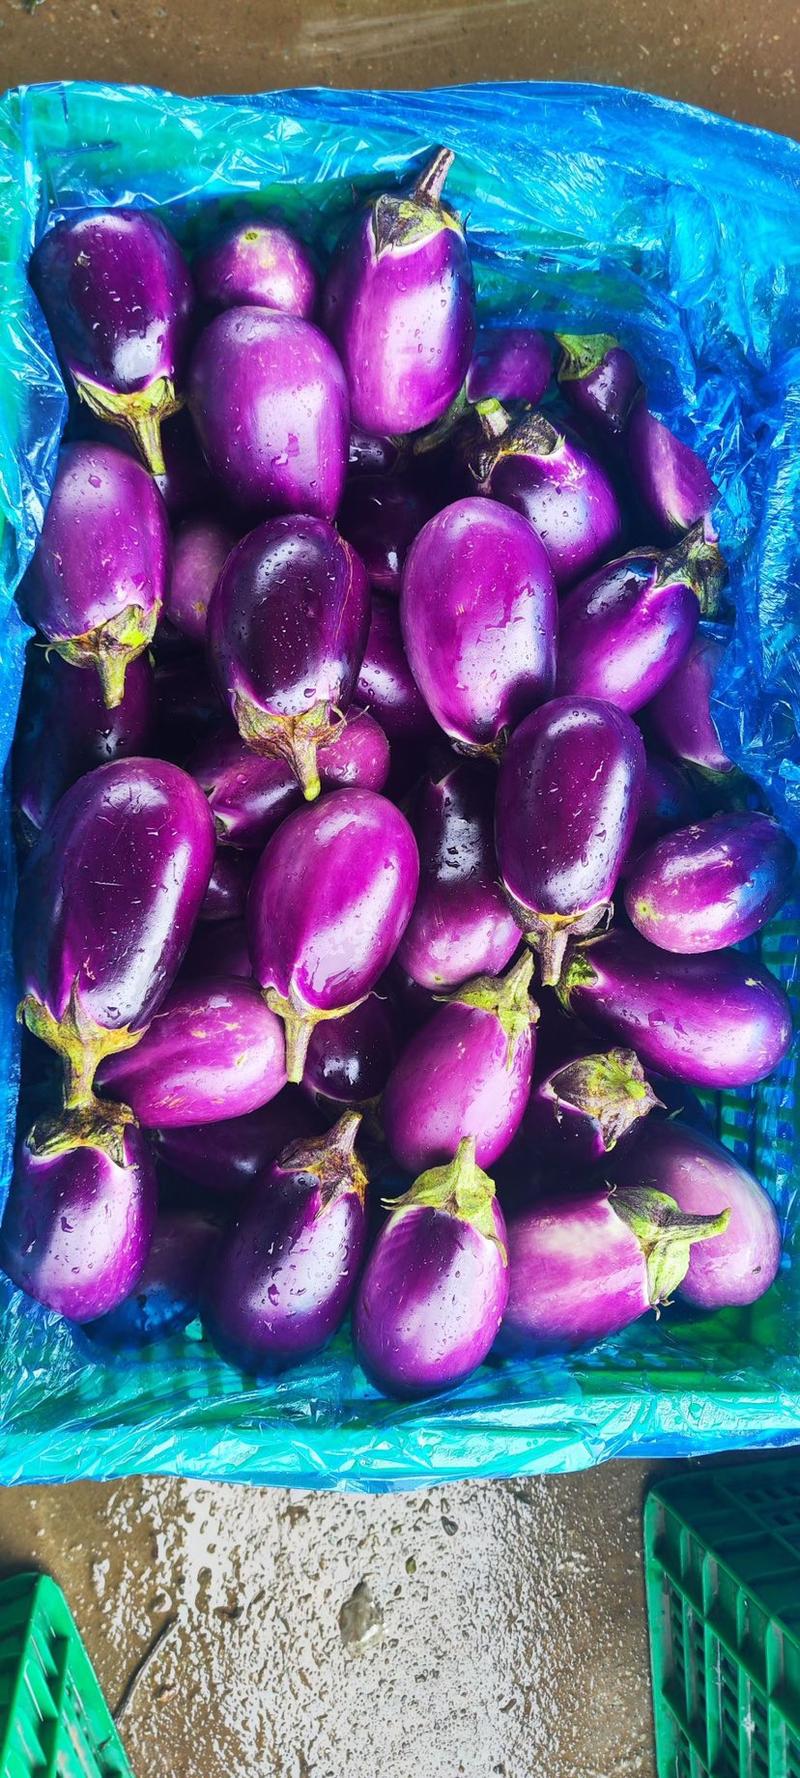 茄瓜、紫长茄